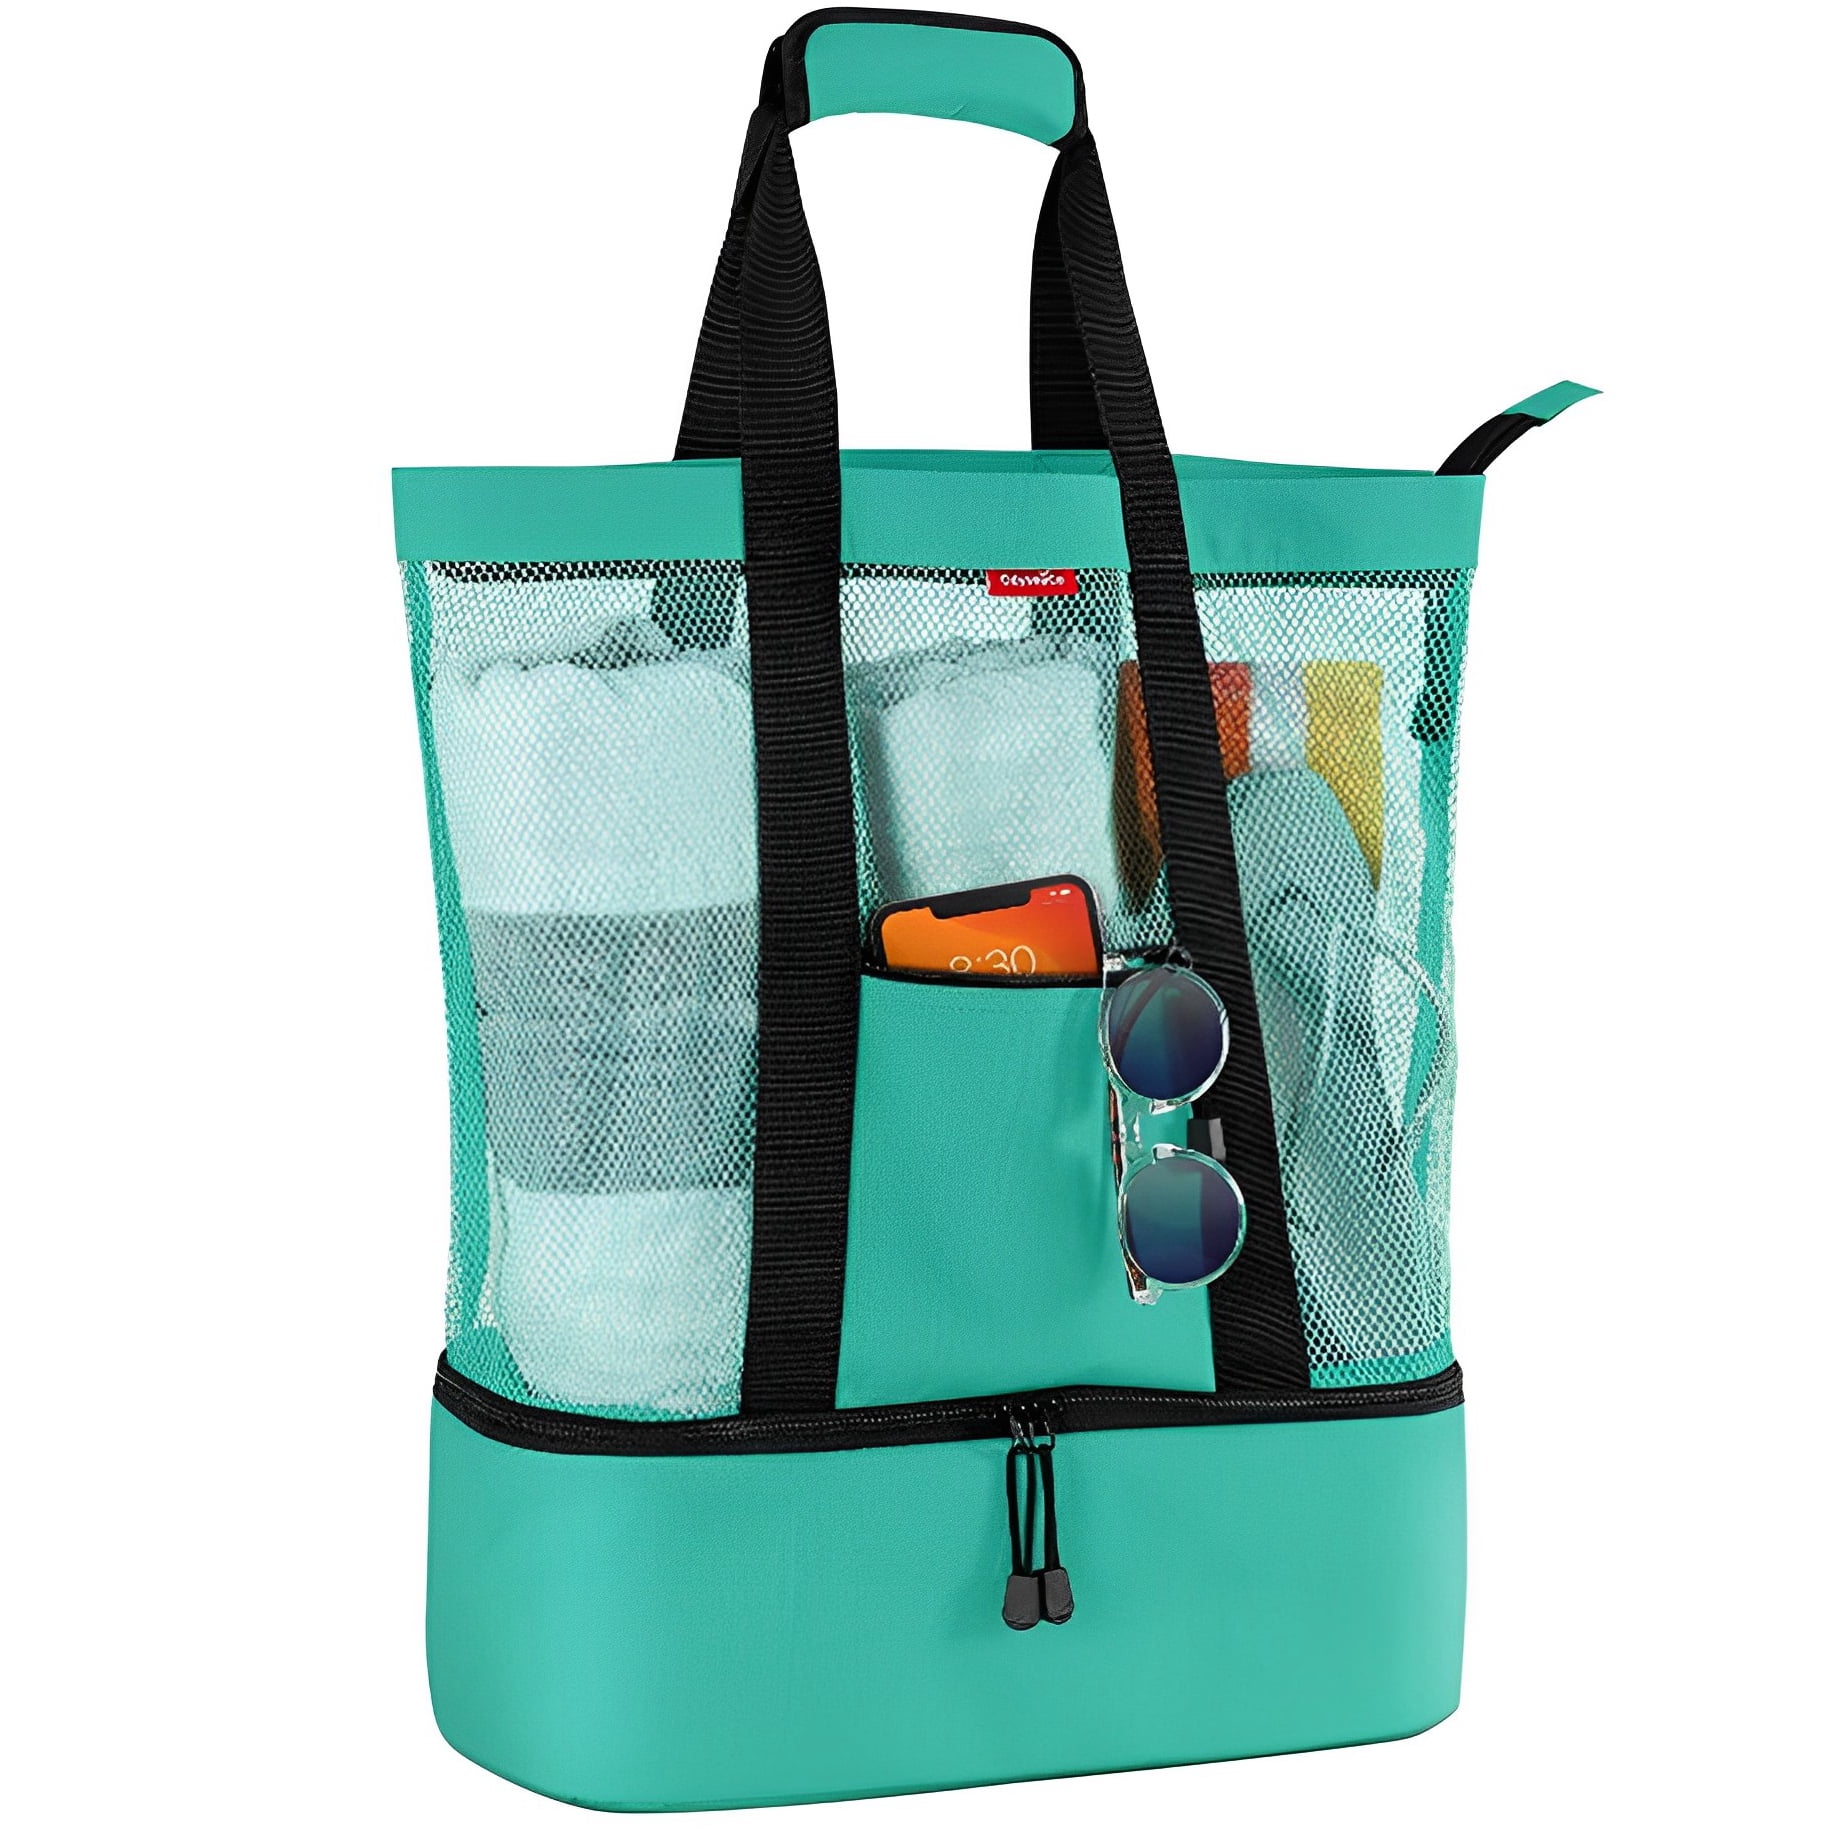 Beach Bag with Cooler Compartment - Cooler Beach Bag - Beach Cooler ...